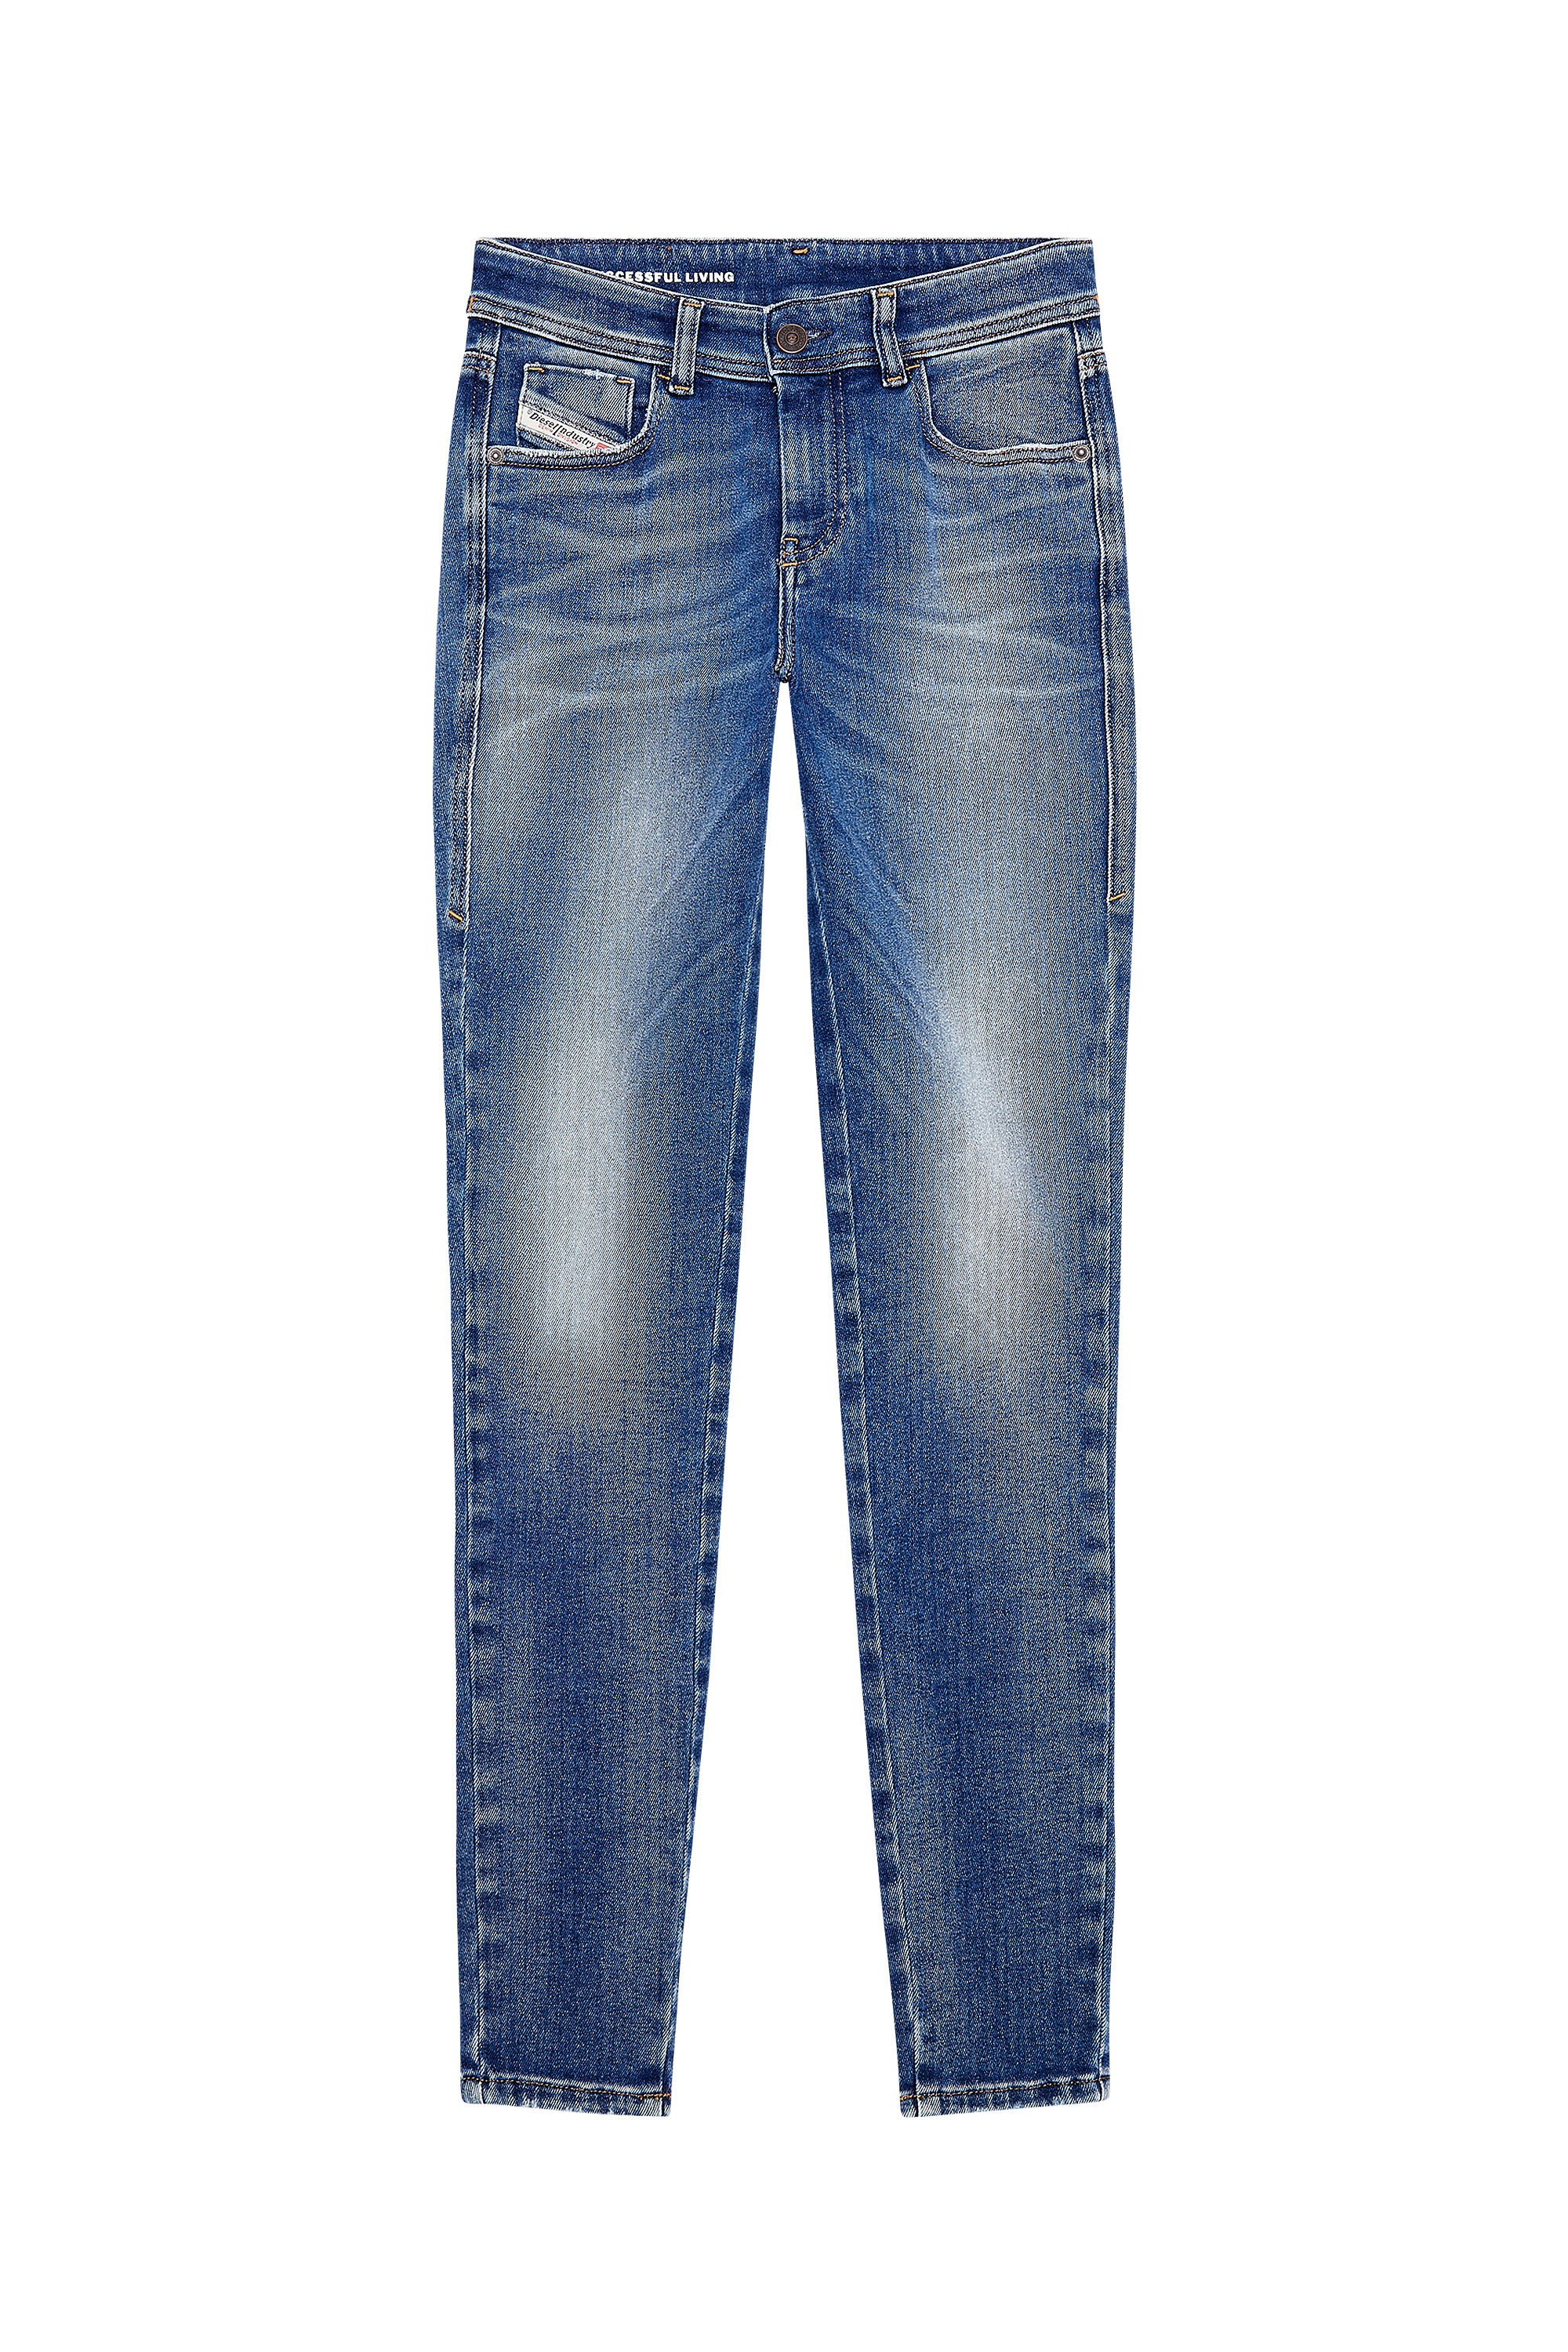 Diesel - Super skinny Jeans 2017 Slandy 09H90, Medium blue - Image 6